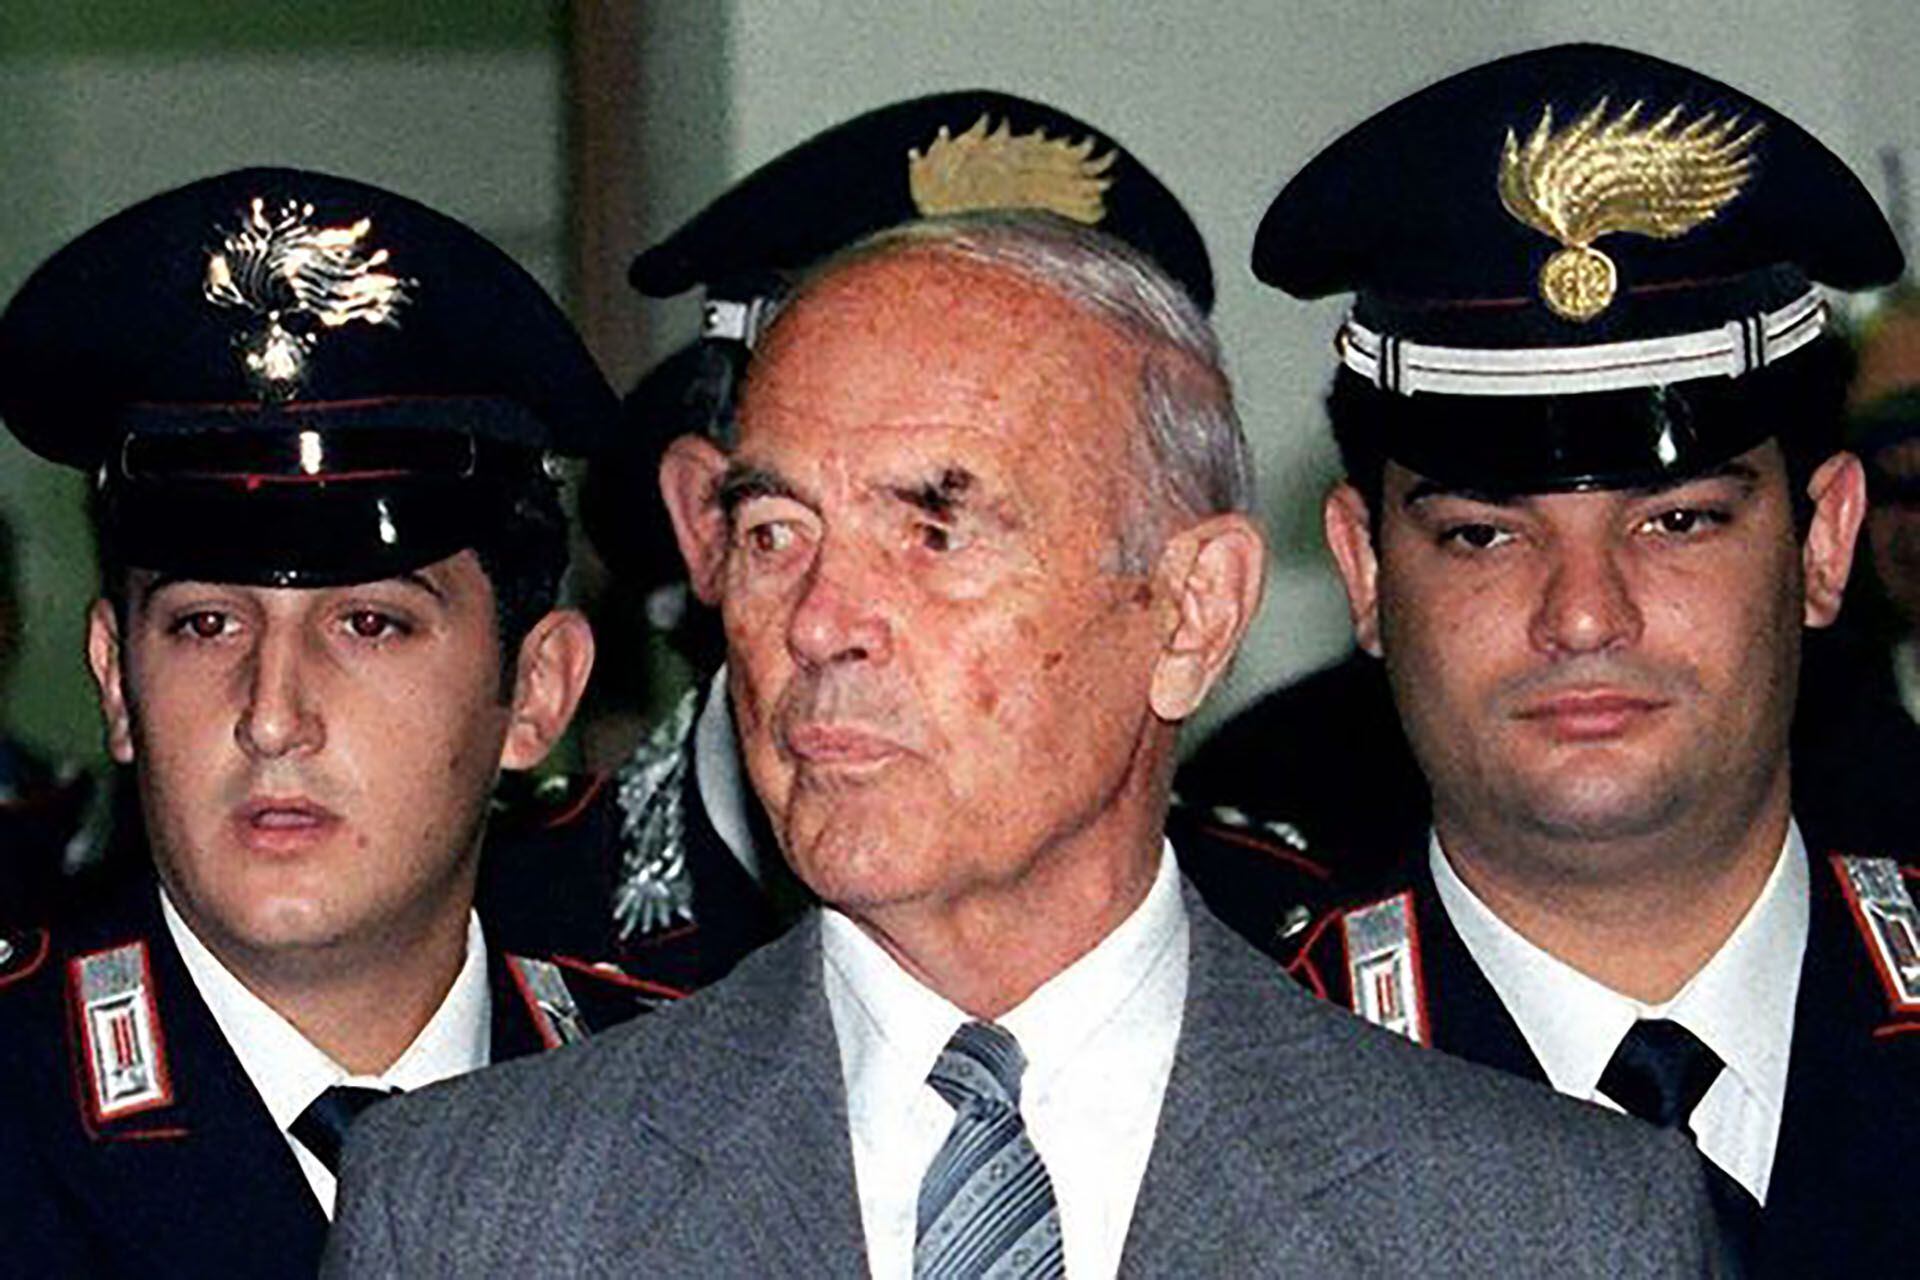 En marzo de 1998 fue condenado a cadena perpetua y vivió sus últimos años con arresto domiciliario en Roma, donde falleció, a los cien años, el 11 de octubre de 2013